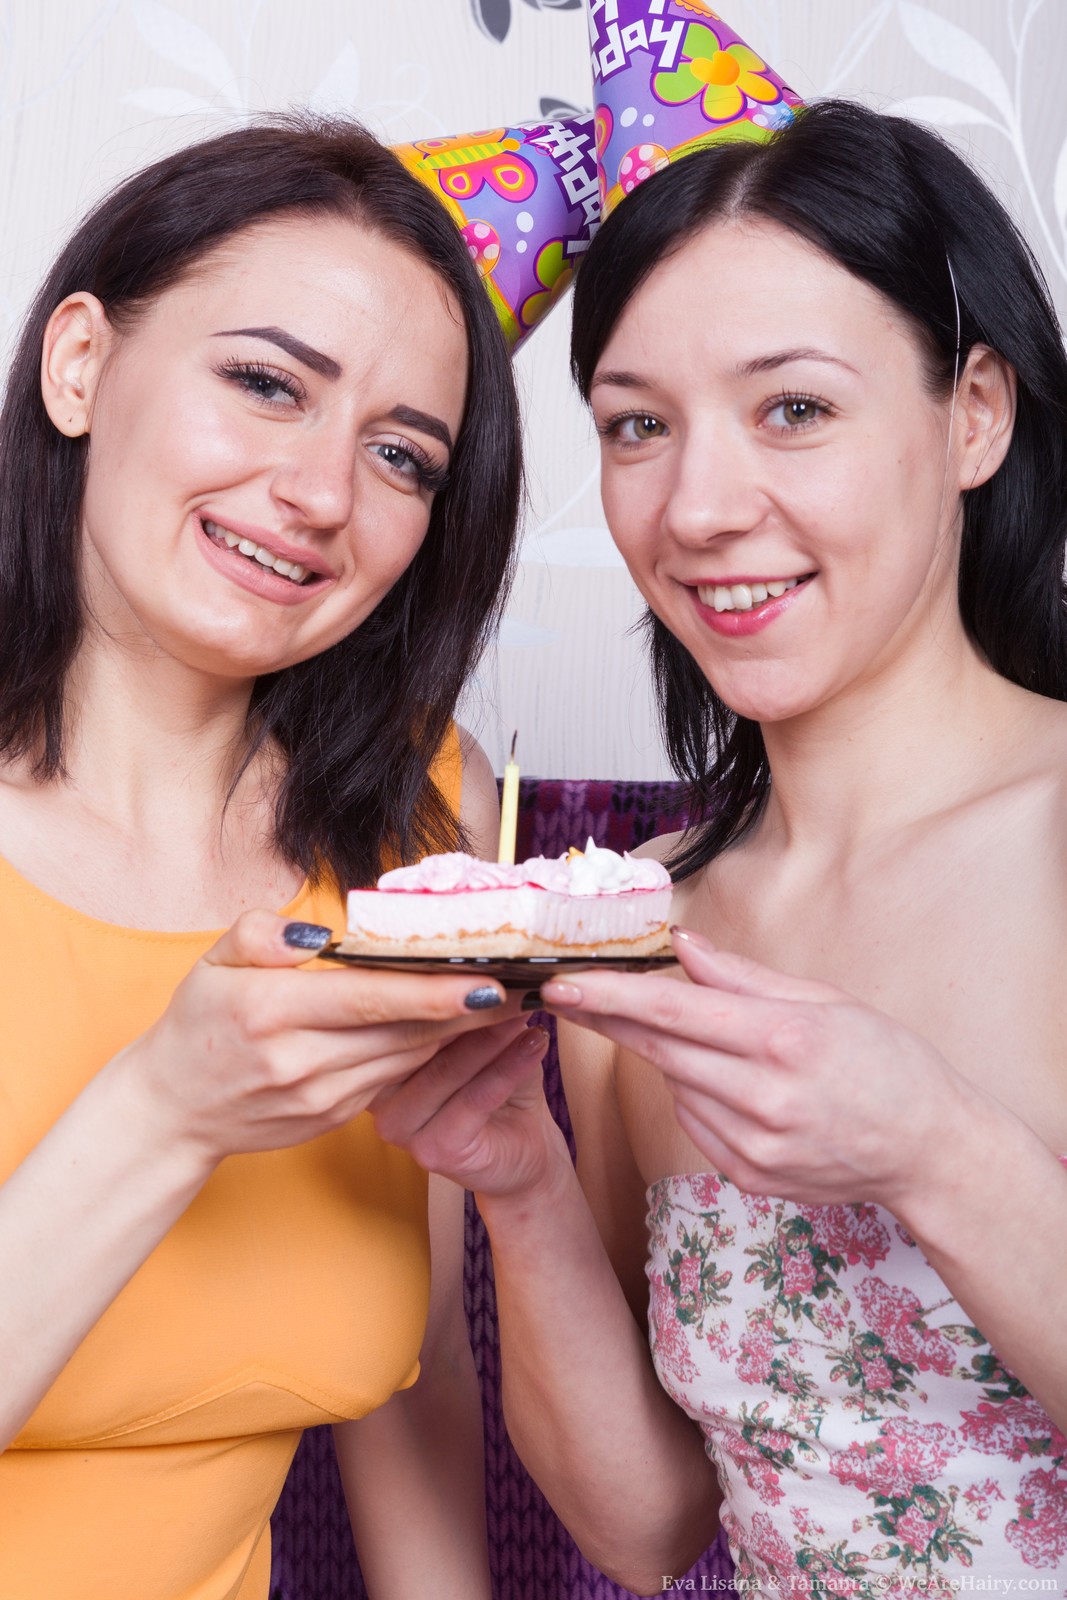 Eva Lisana and Tamanta enjoy sexy cake